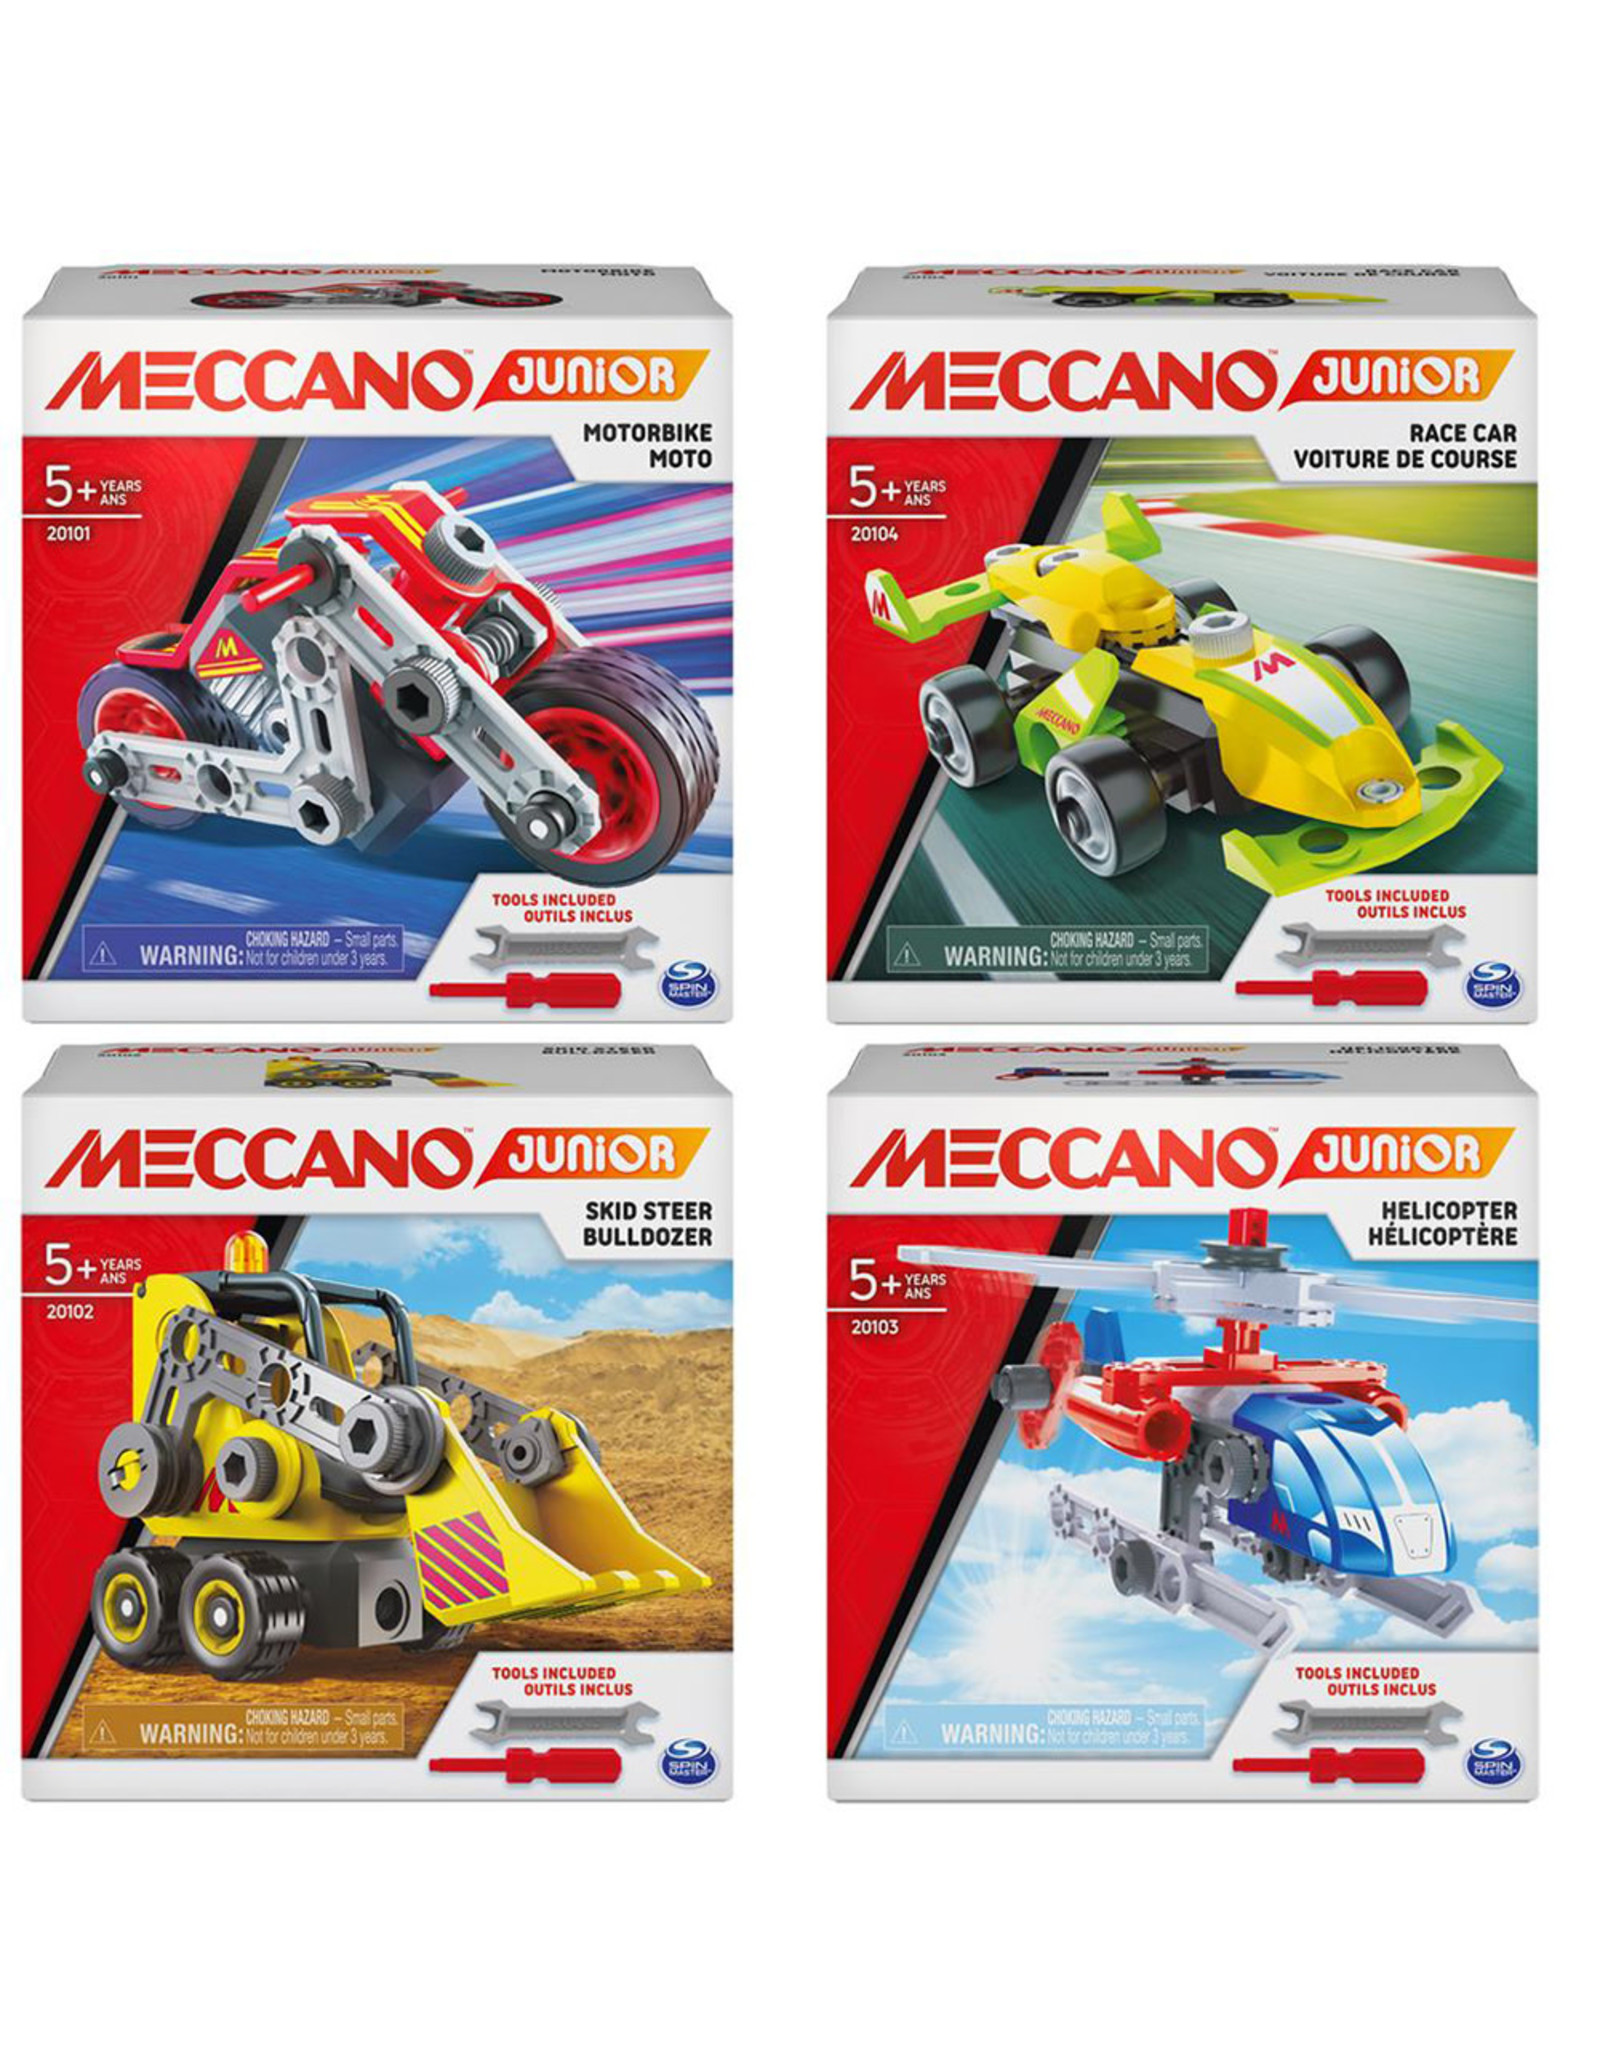 Meccano junior motorcycle